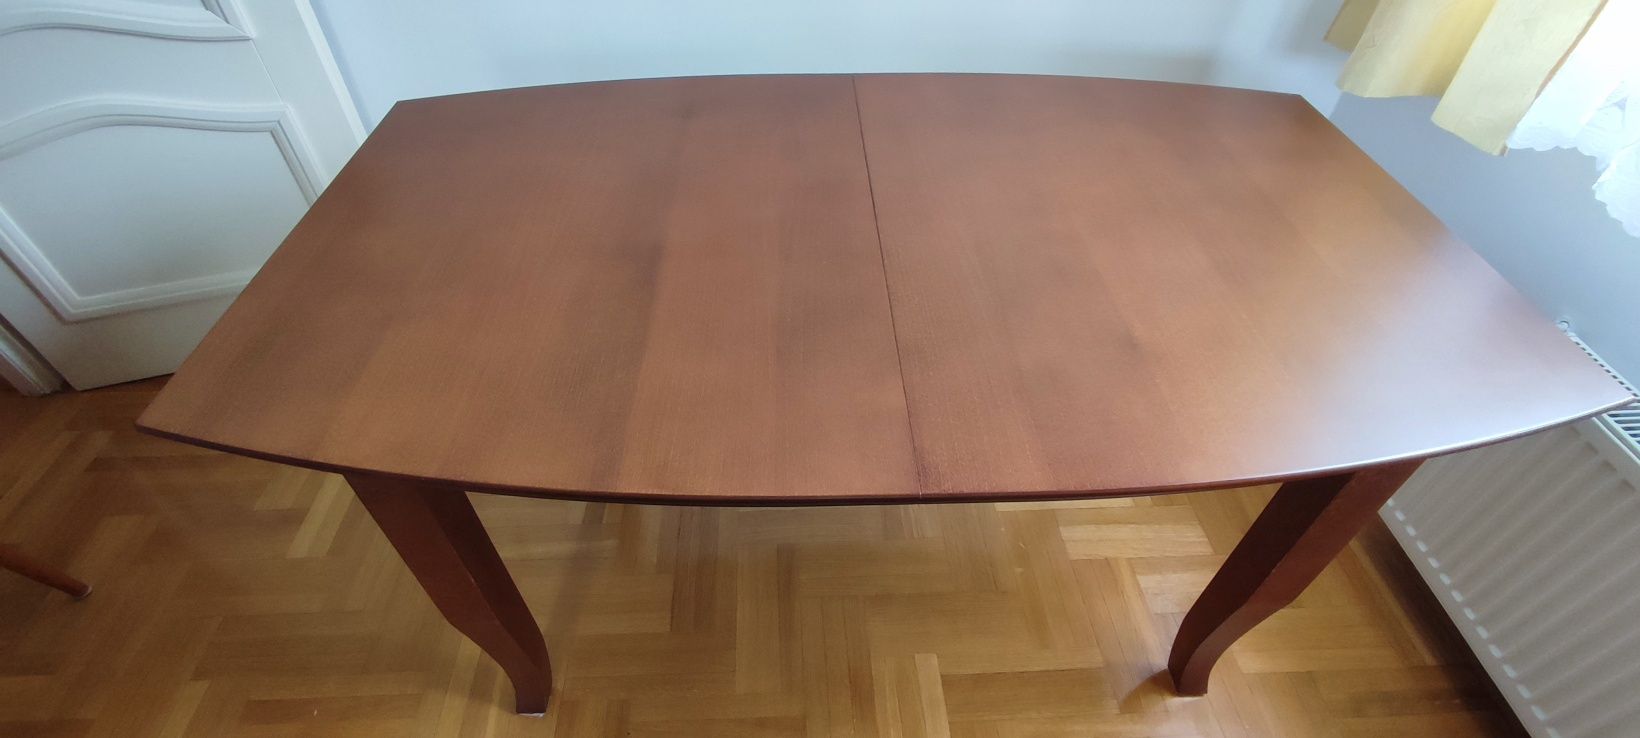 Piękny nowy stół z litego drewna